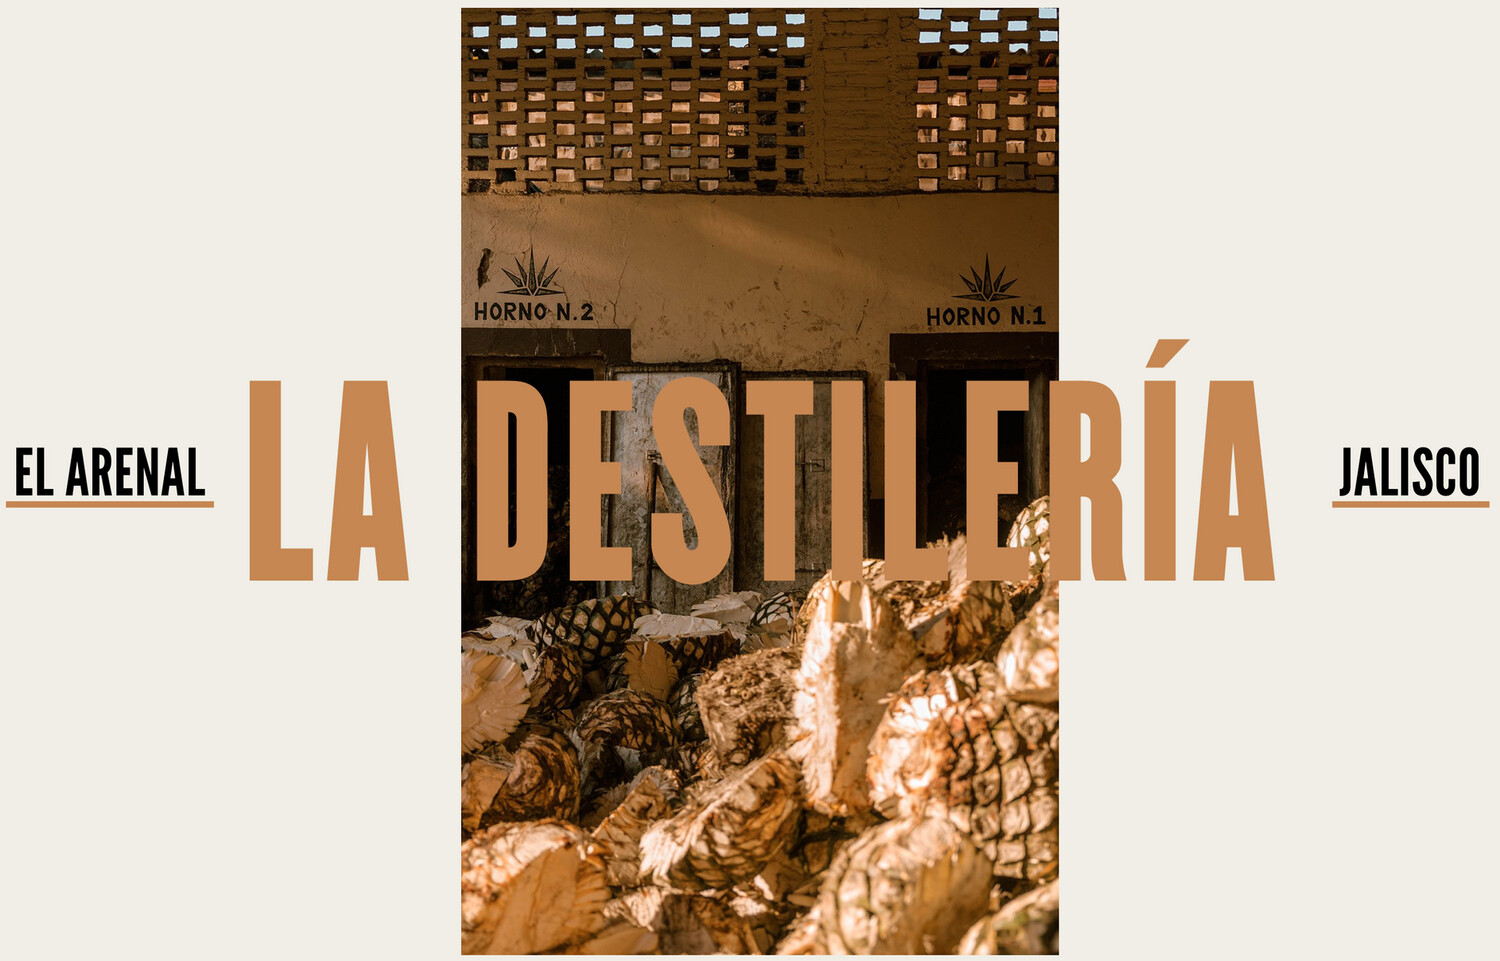 Journey through NOM 1123 - Destileria "El Arenal"